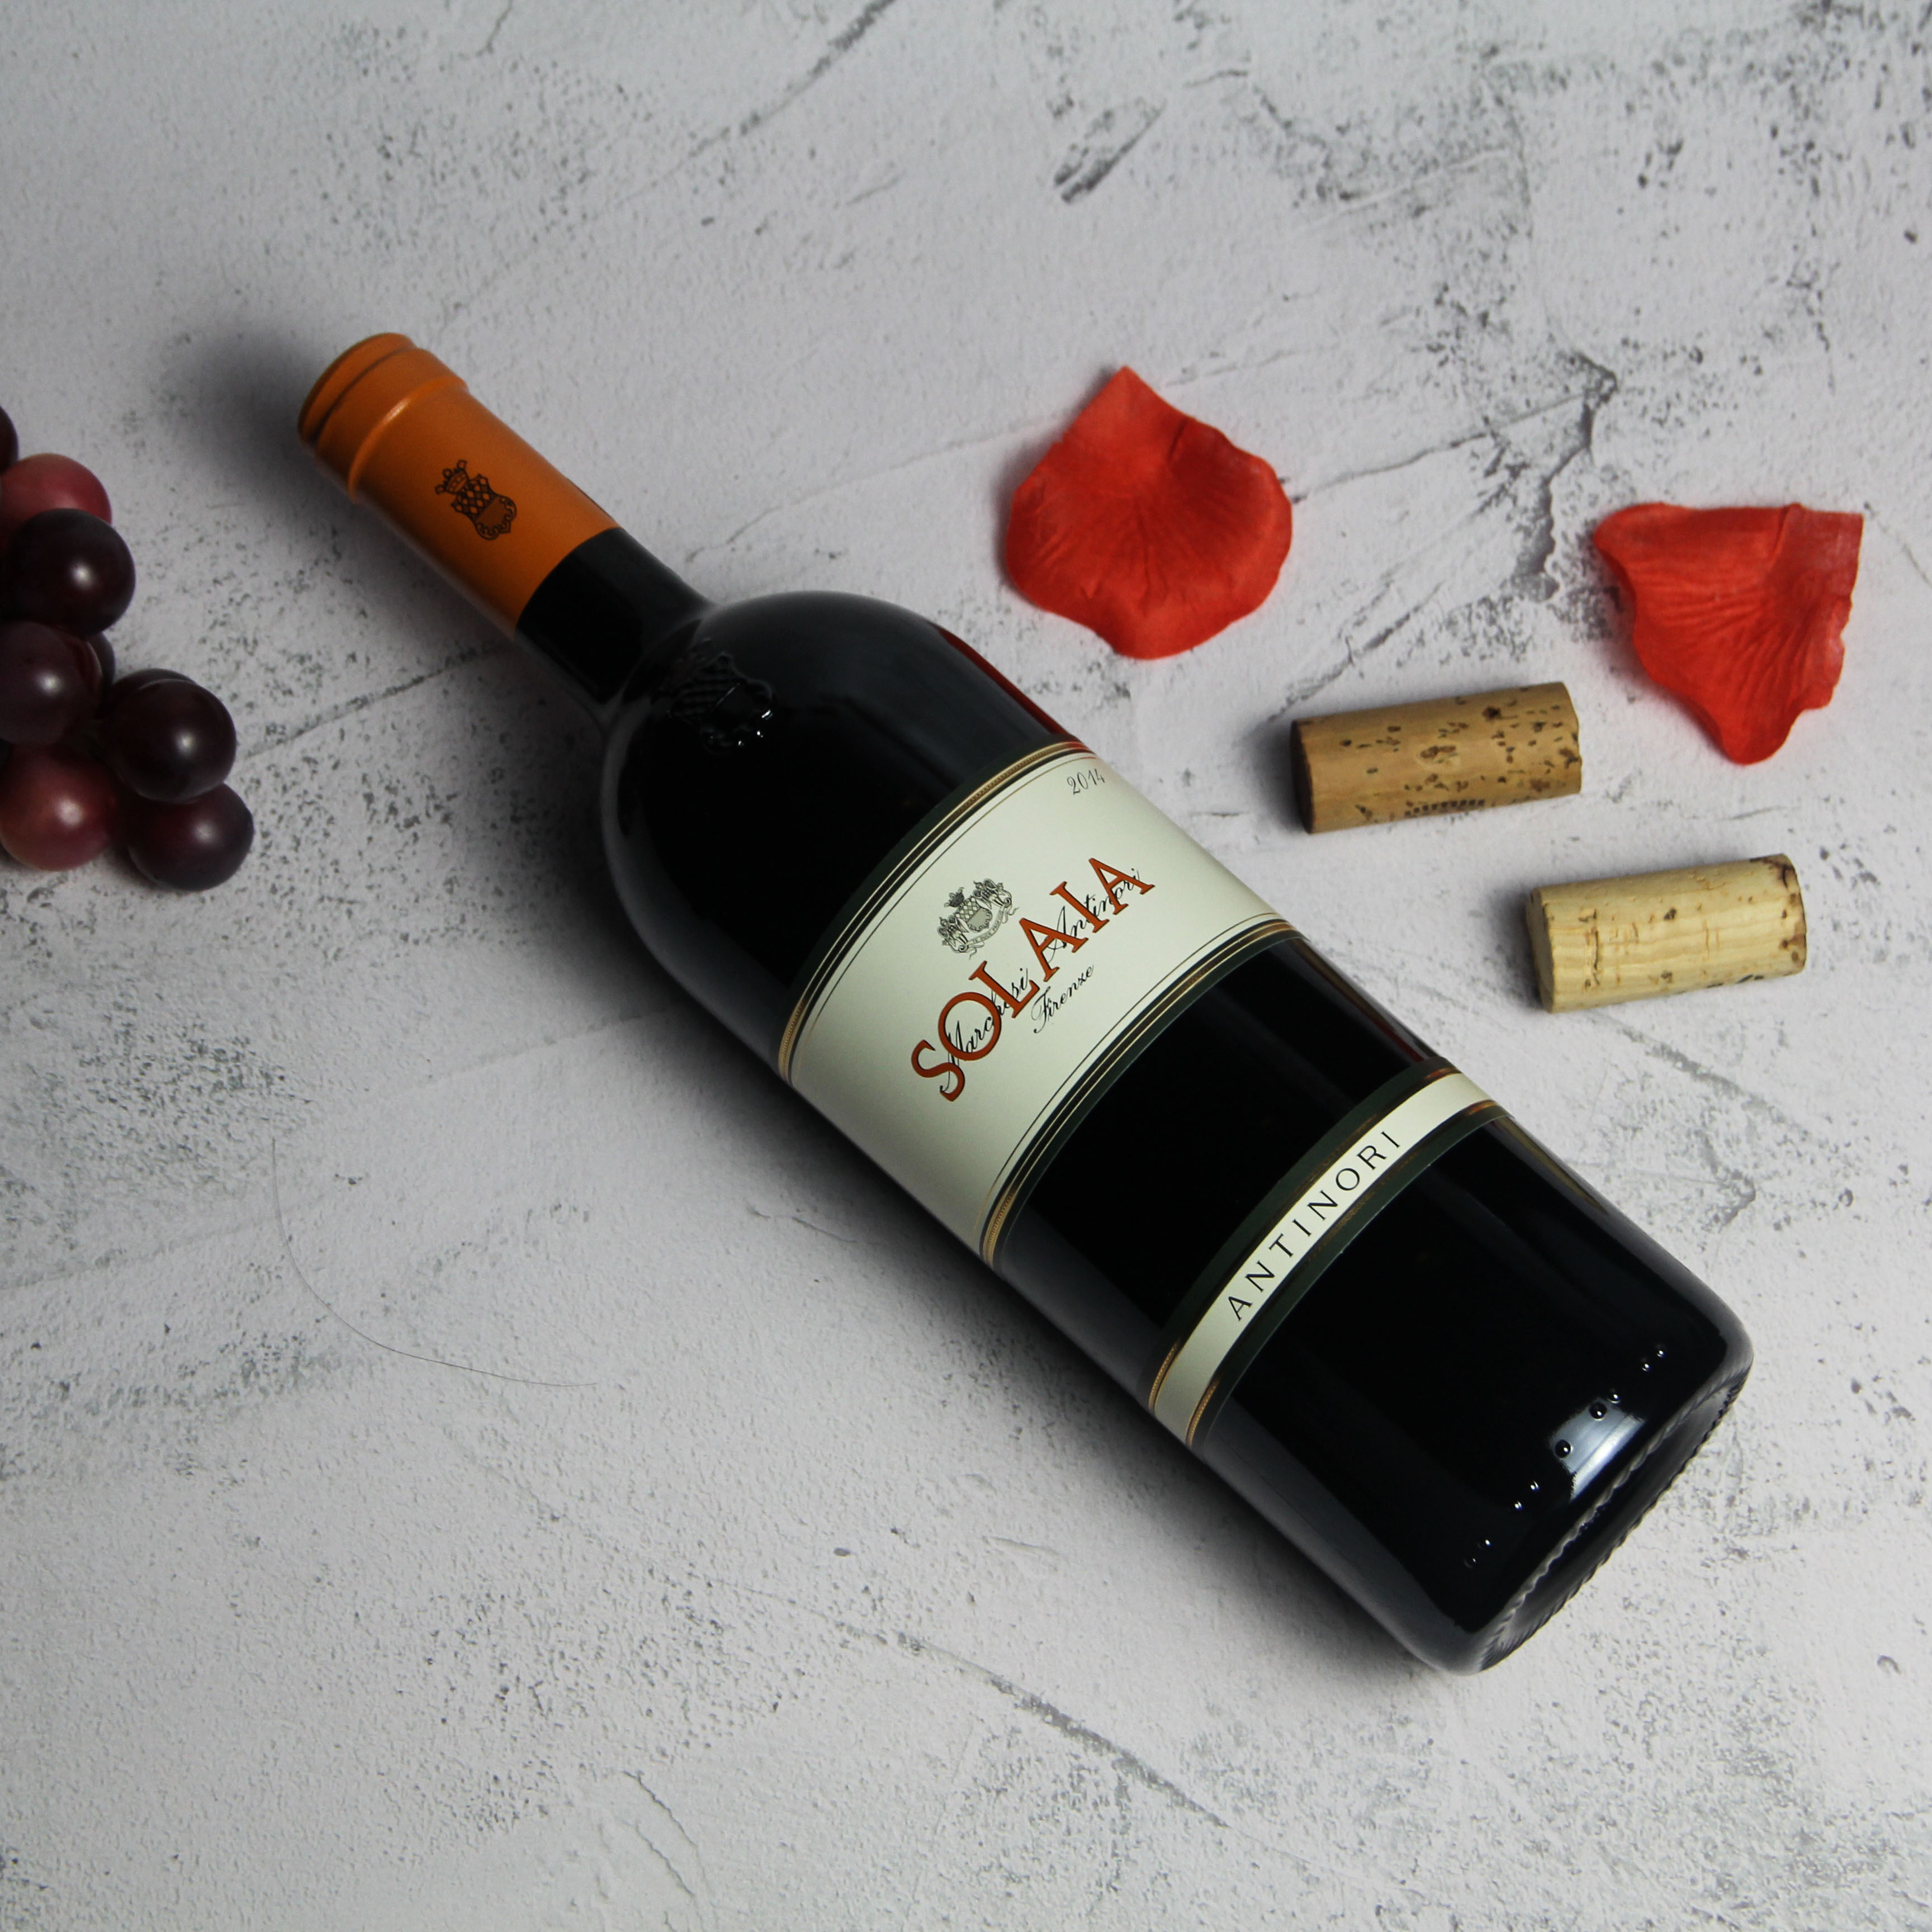 意大利托斯卡纳索拉雅红葡萄酒红酒2014